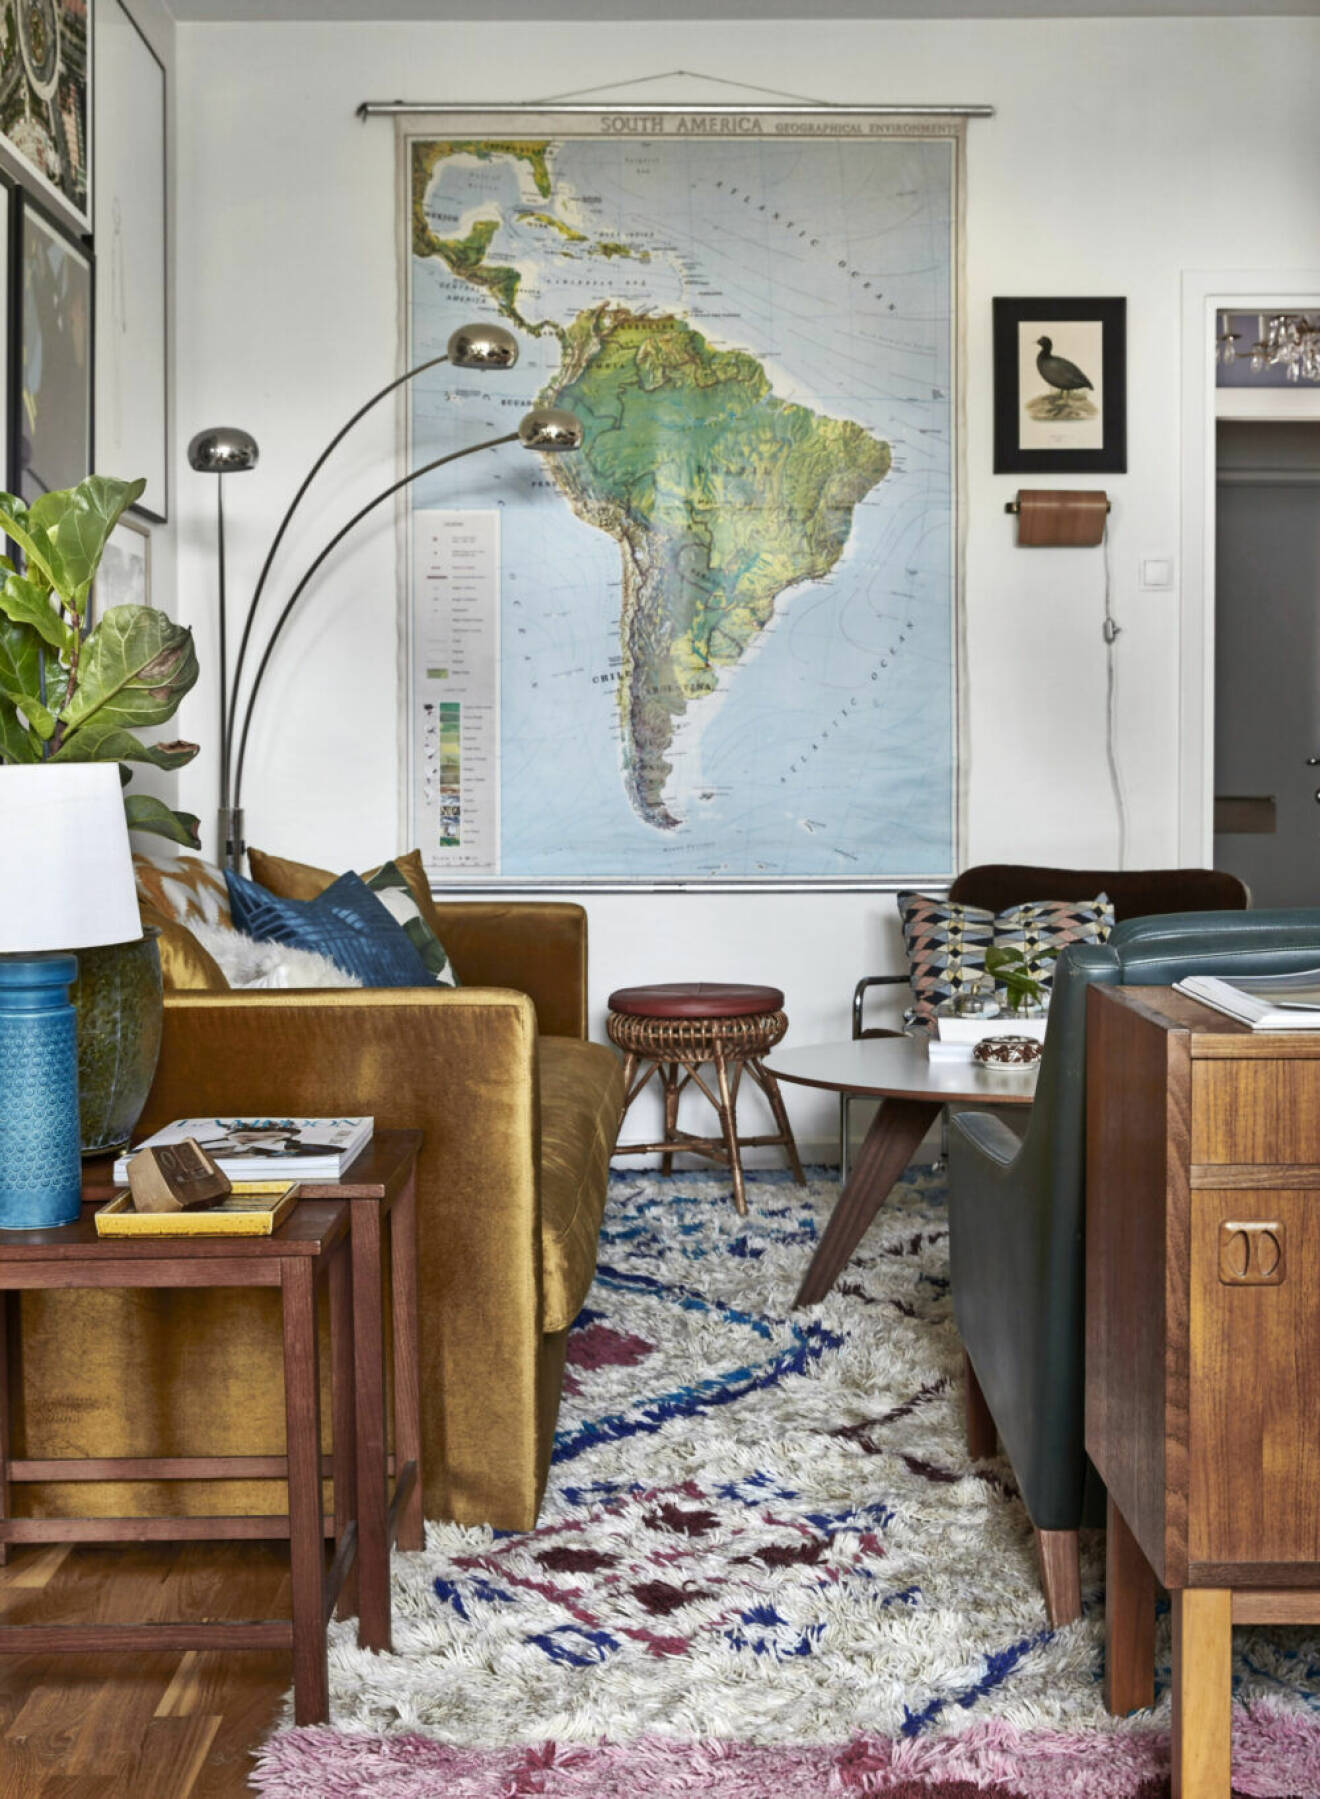 Karta över Sydamerika hängandes vid soffan i vardagsrummet